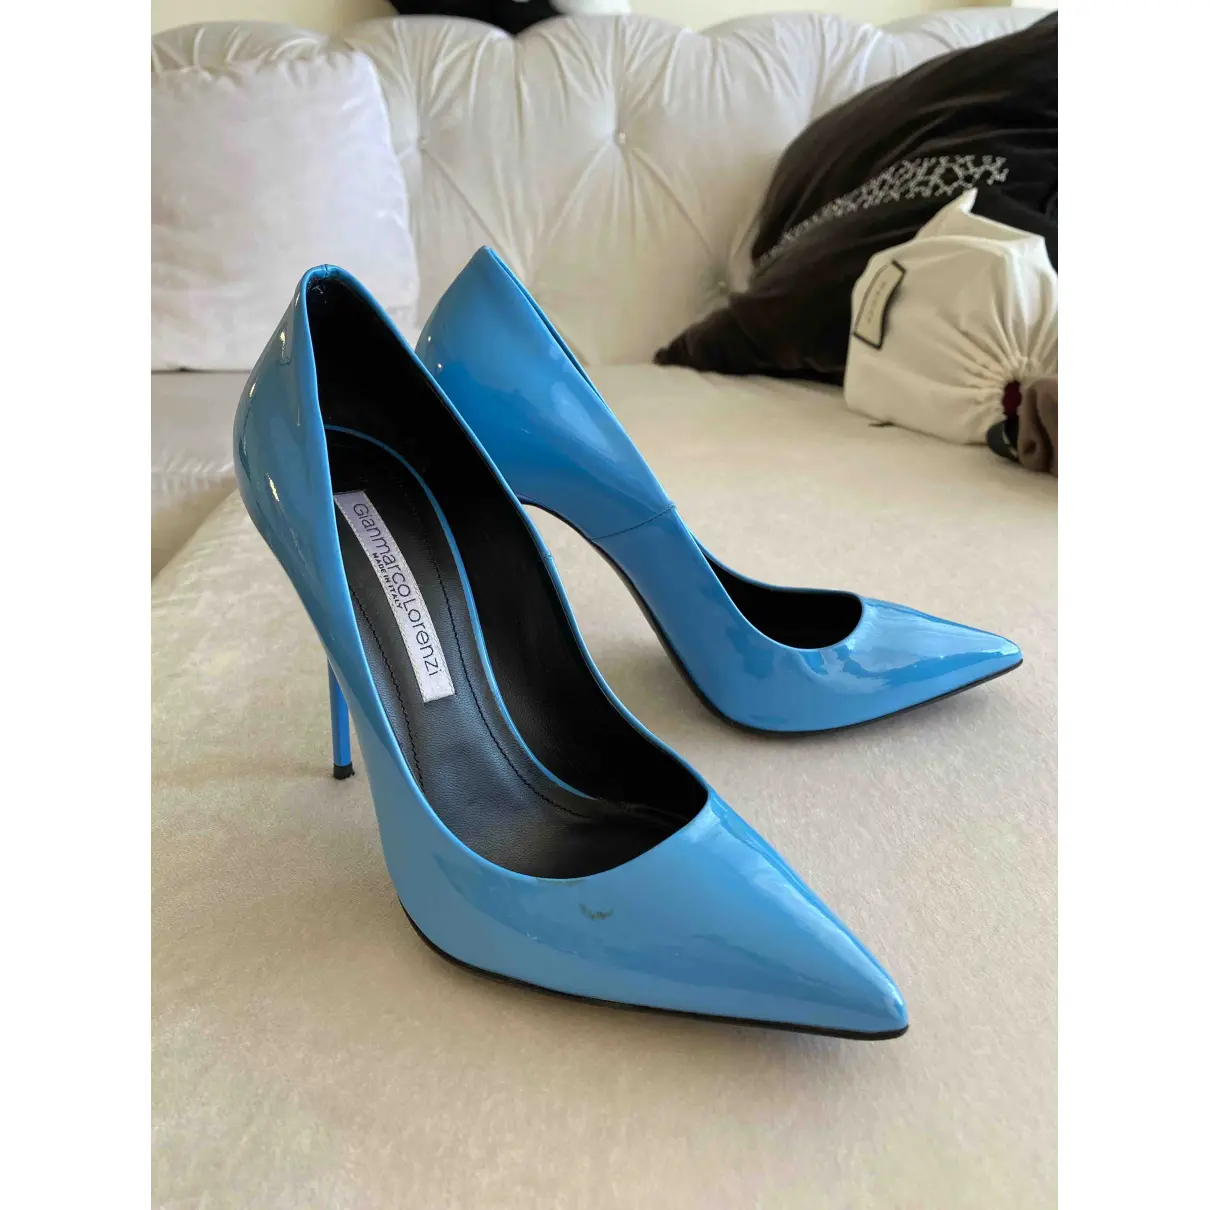 Patent leather heels Gianmarco Lorenzi